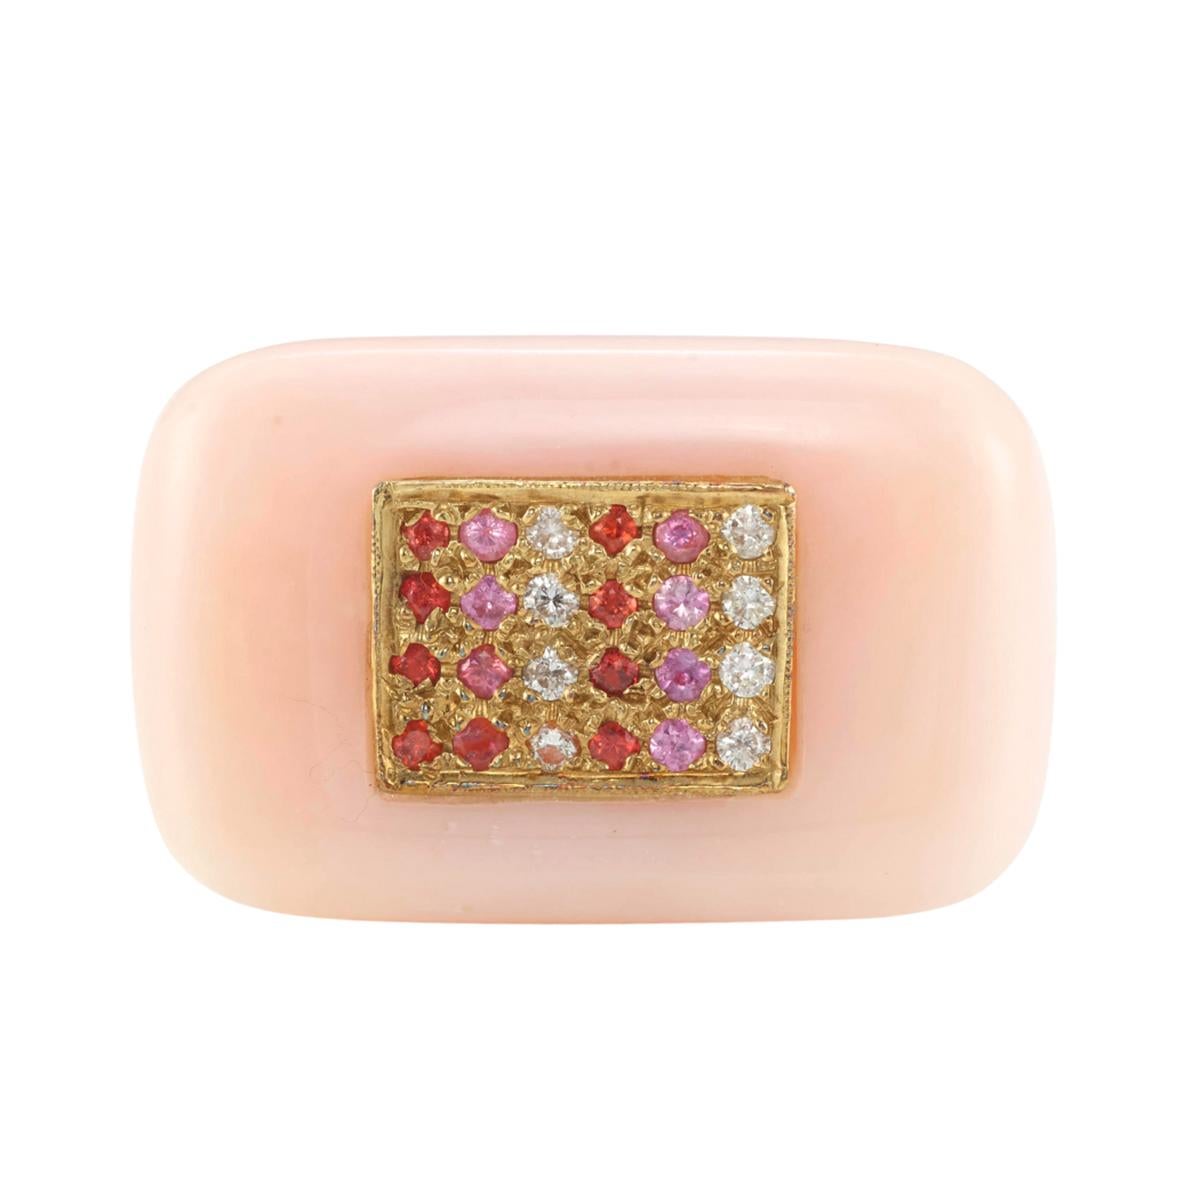 Hübsch in Rosa!

Dieser pink- und rosafarbene Ring funkelt mit diamantenen Akzenten und ist ein witziges, von Cupcakes inspiriertes Schmuckstück. Aus 18 Karat Gelbgold und rosa Opal, signiert von Kara Ross.

Breite ist 1-7/5 Zoll
Ungefähres Gewicht: